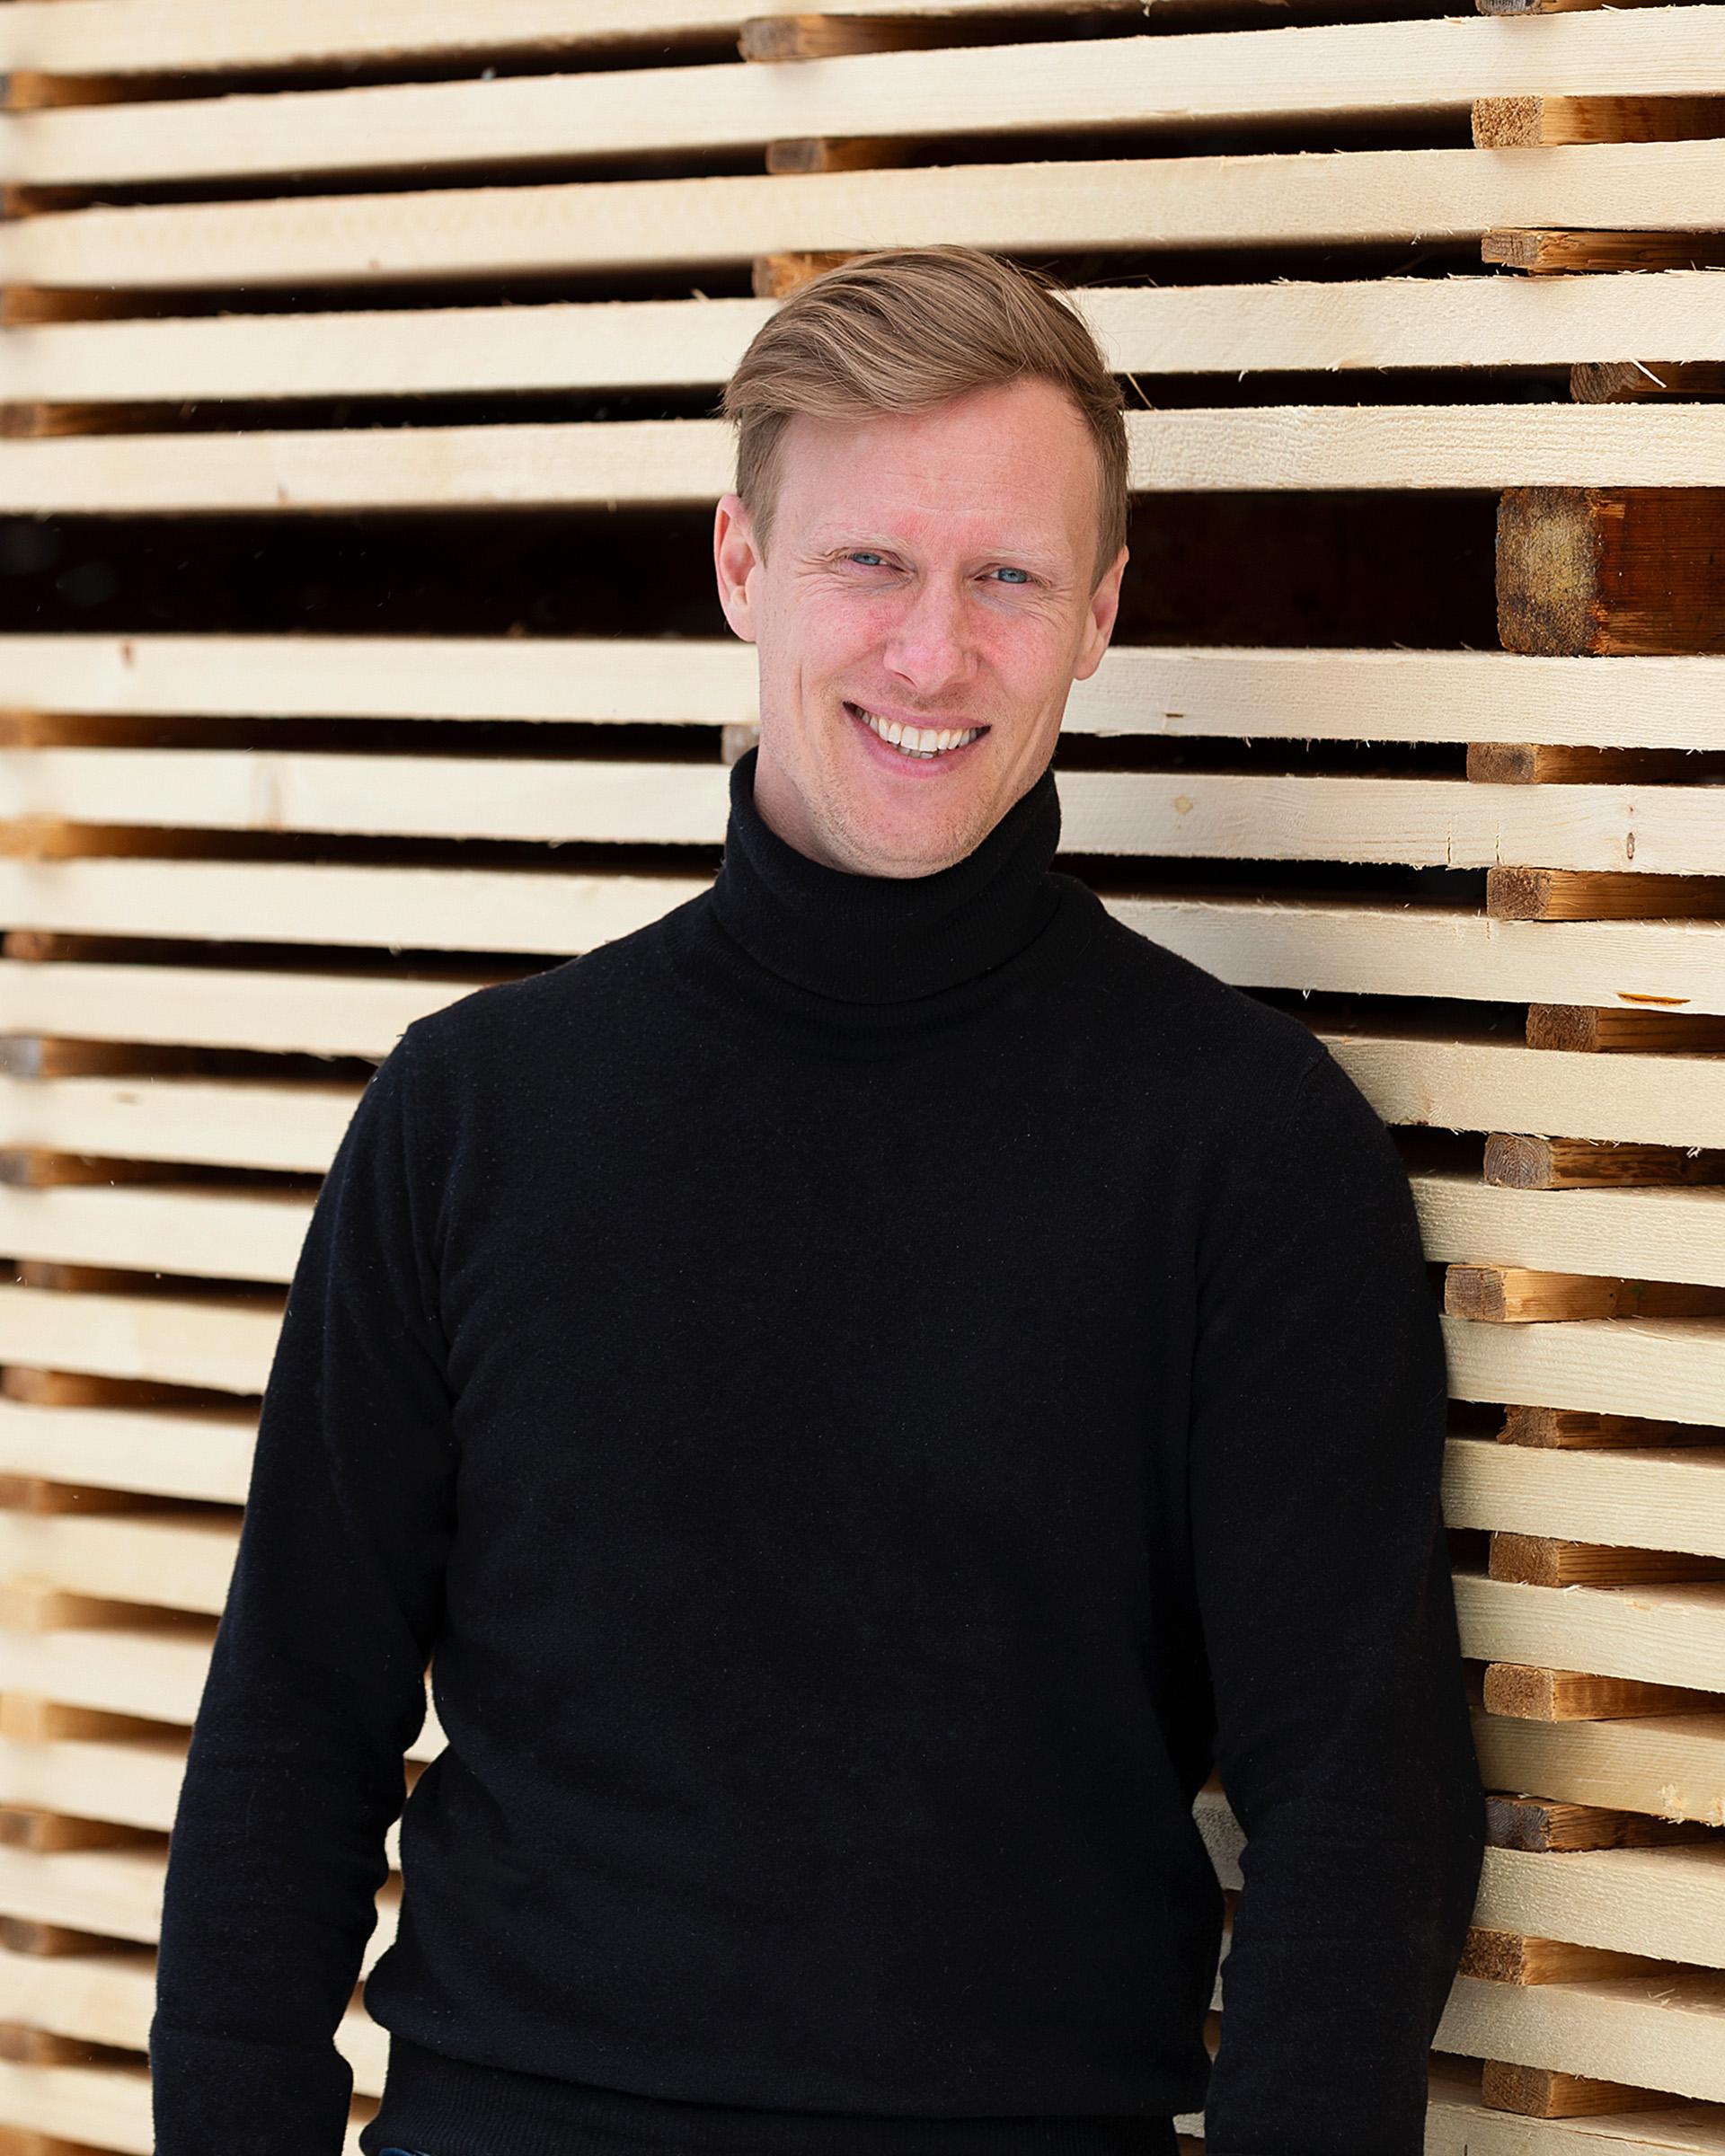  Daniel Färdeman, Sales Manager på Norra Timber